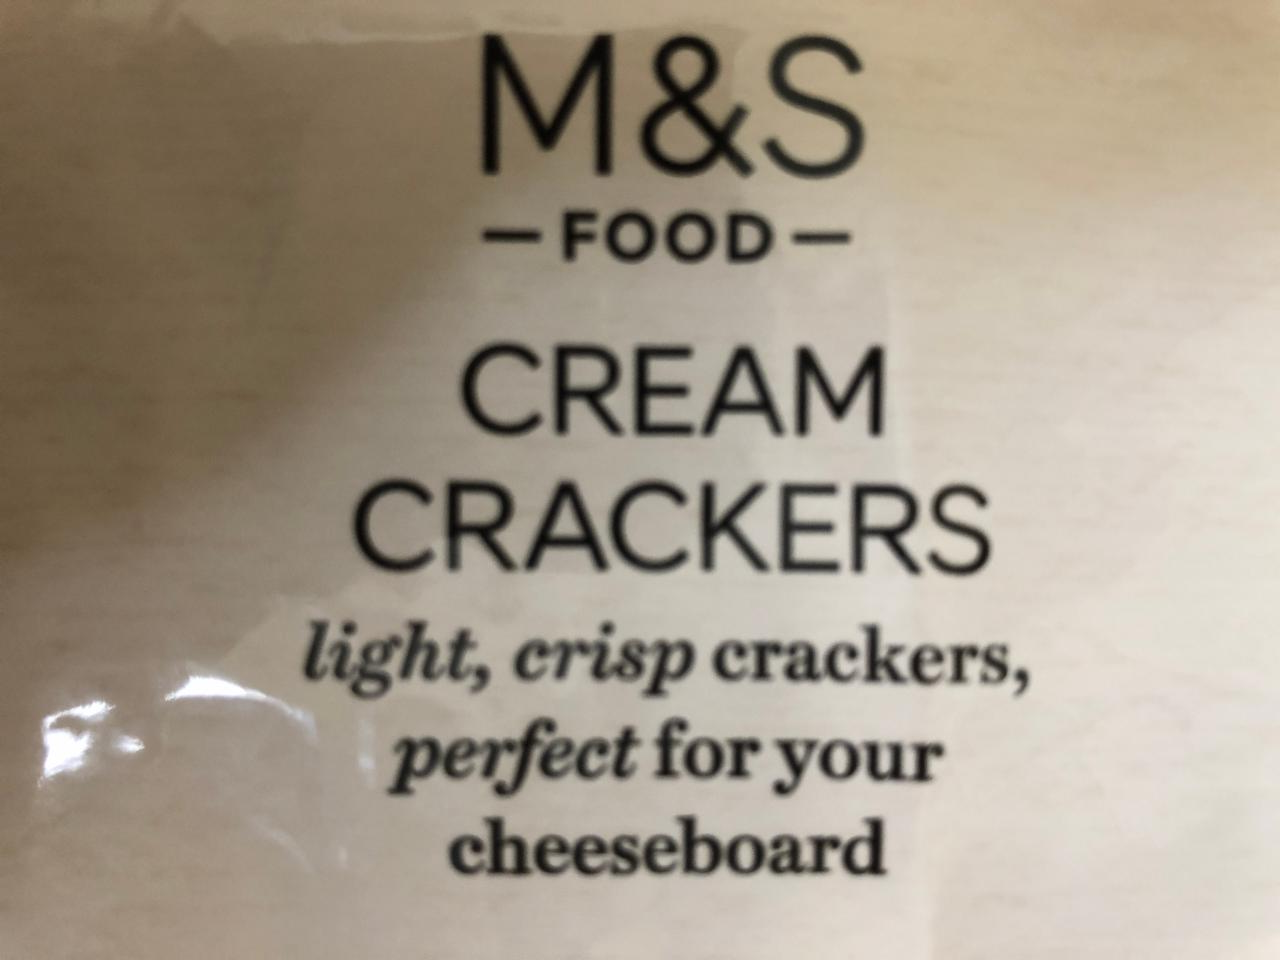 Fotografie - Cream crackers M&S Food